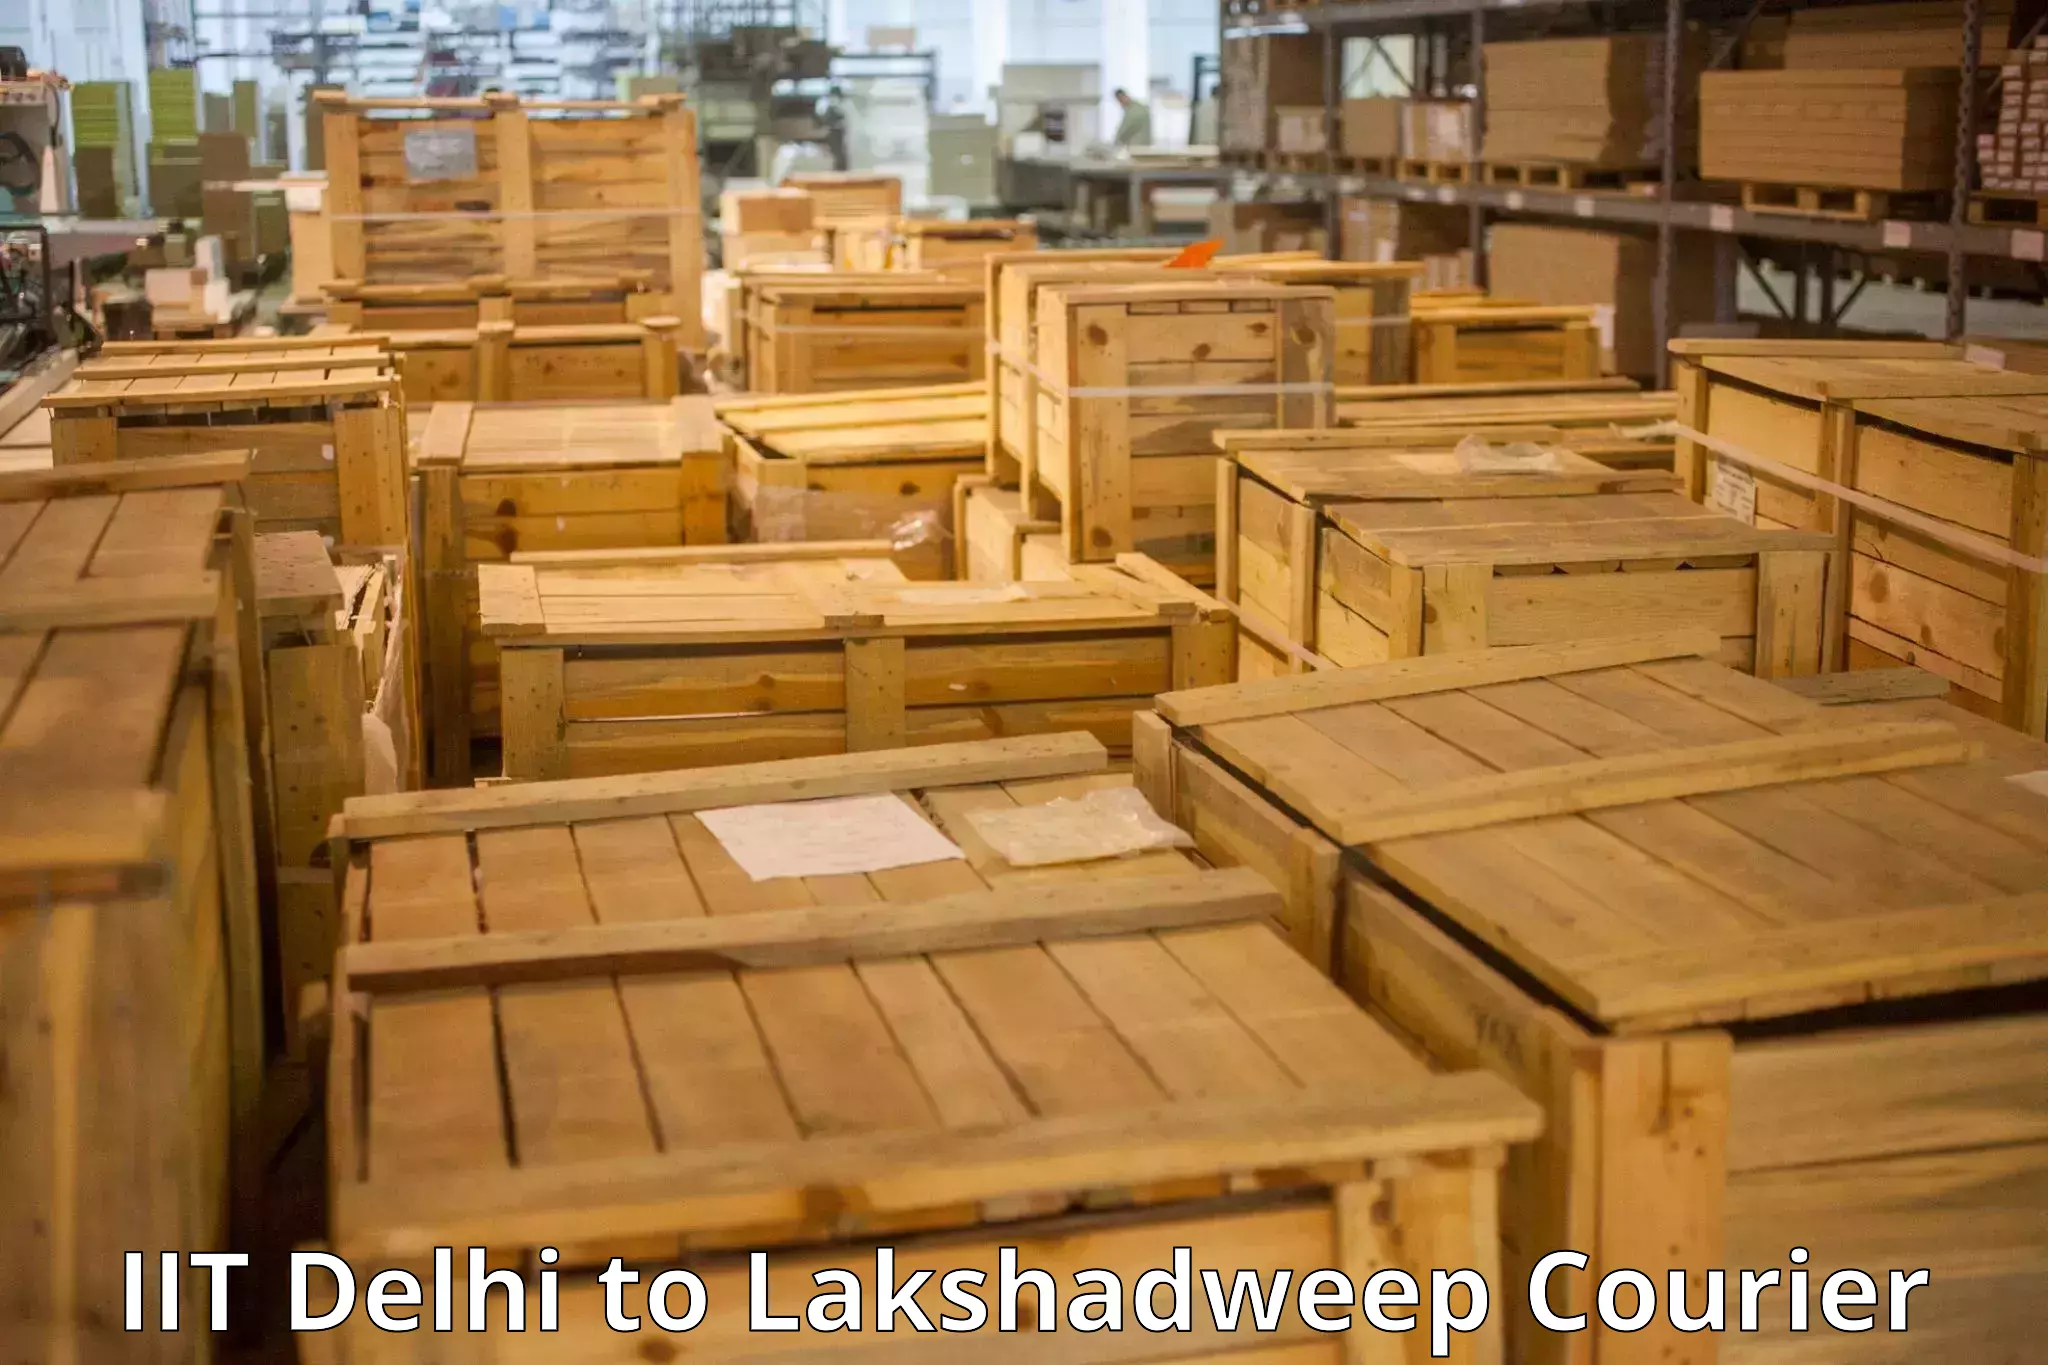 Express baggage shipping IIT Delhi to Lakshadweep